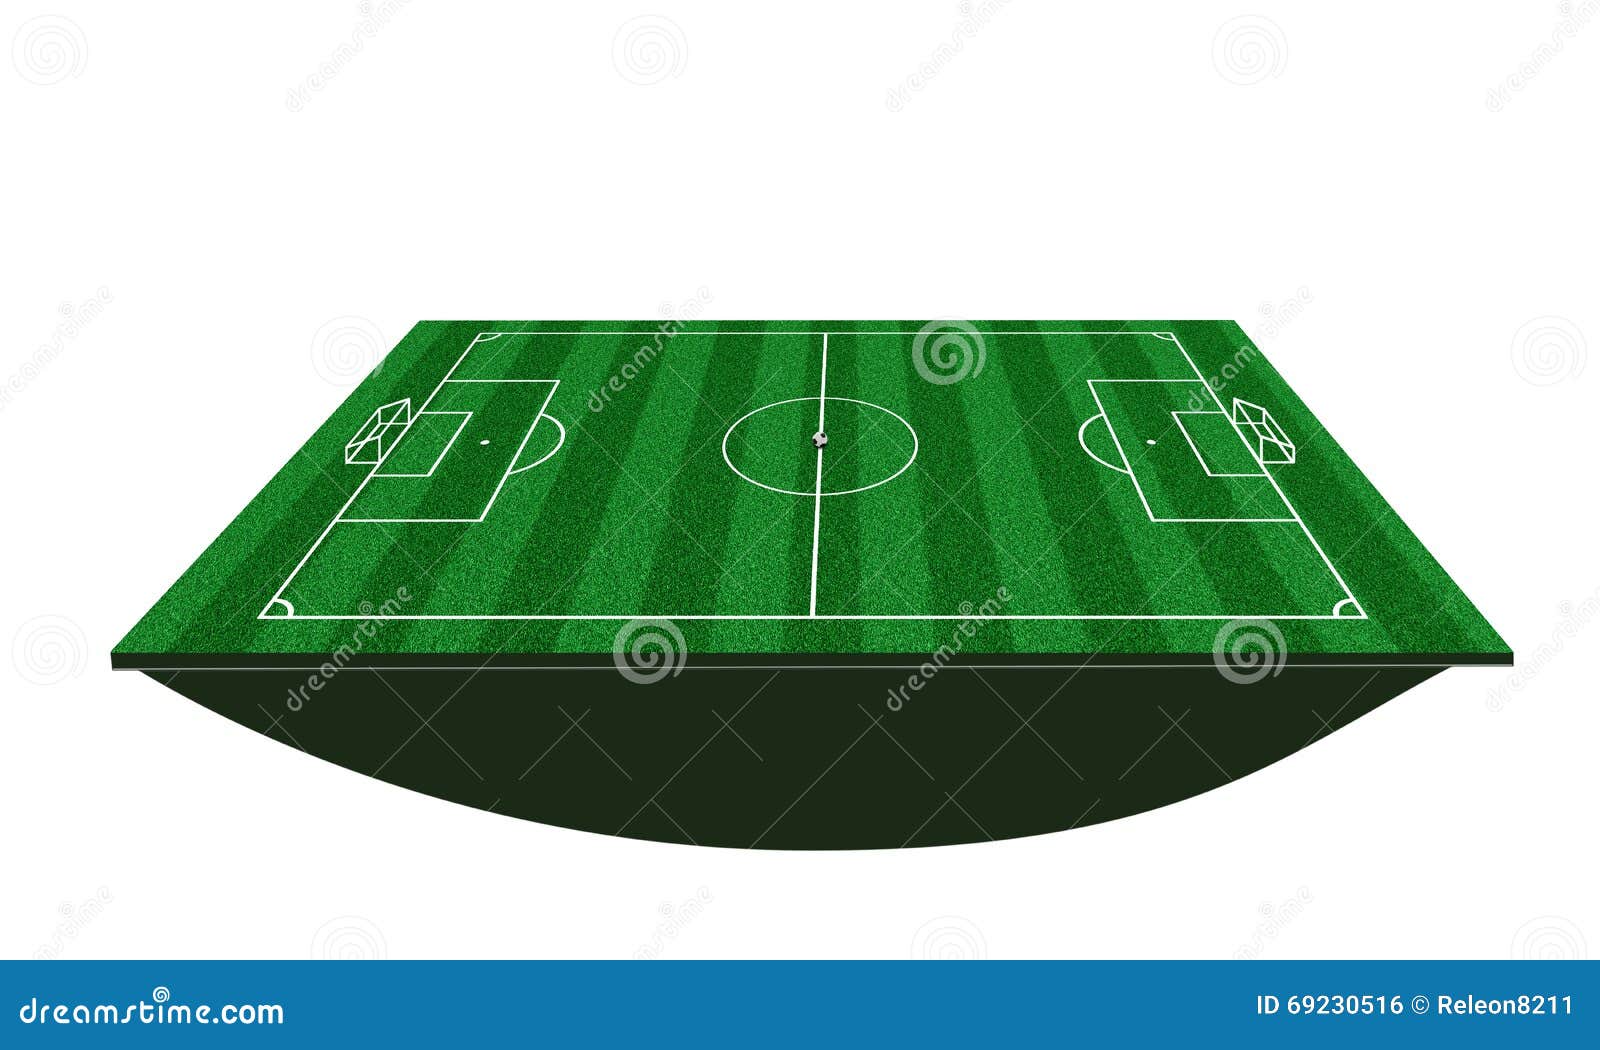 campo de futebol 3D fundo - ilustração vetorial - Stockphoto #11650724